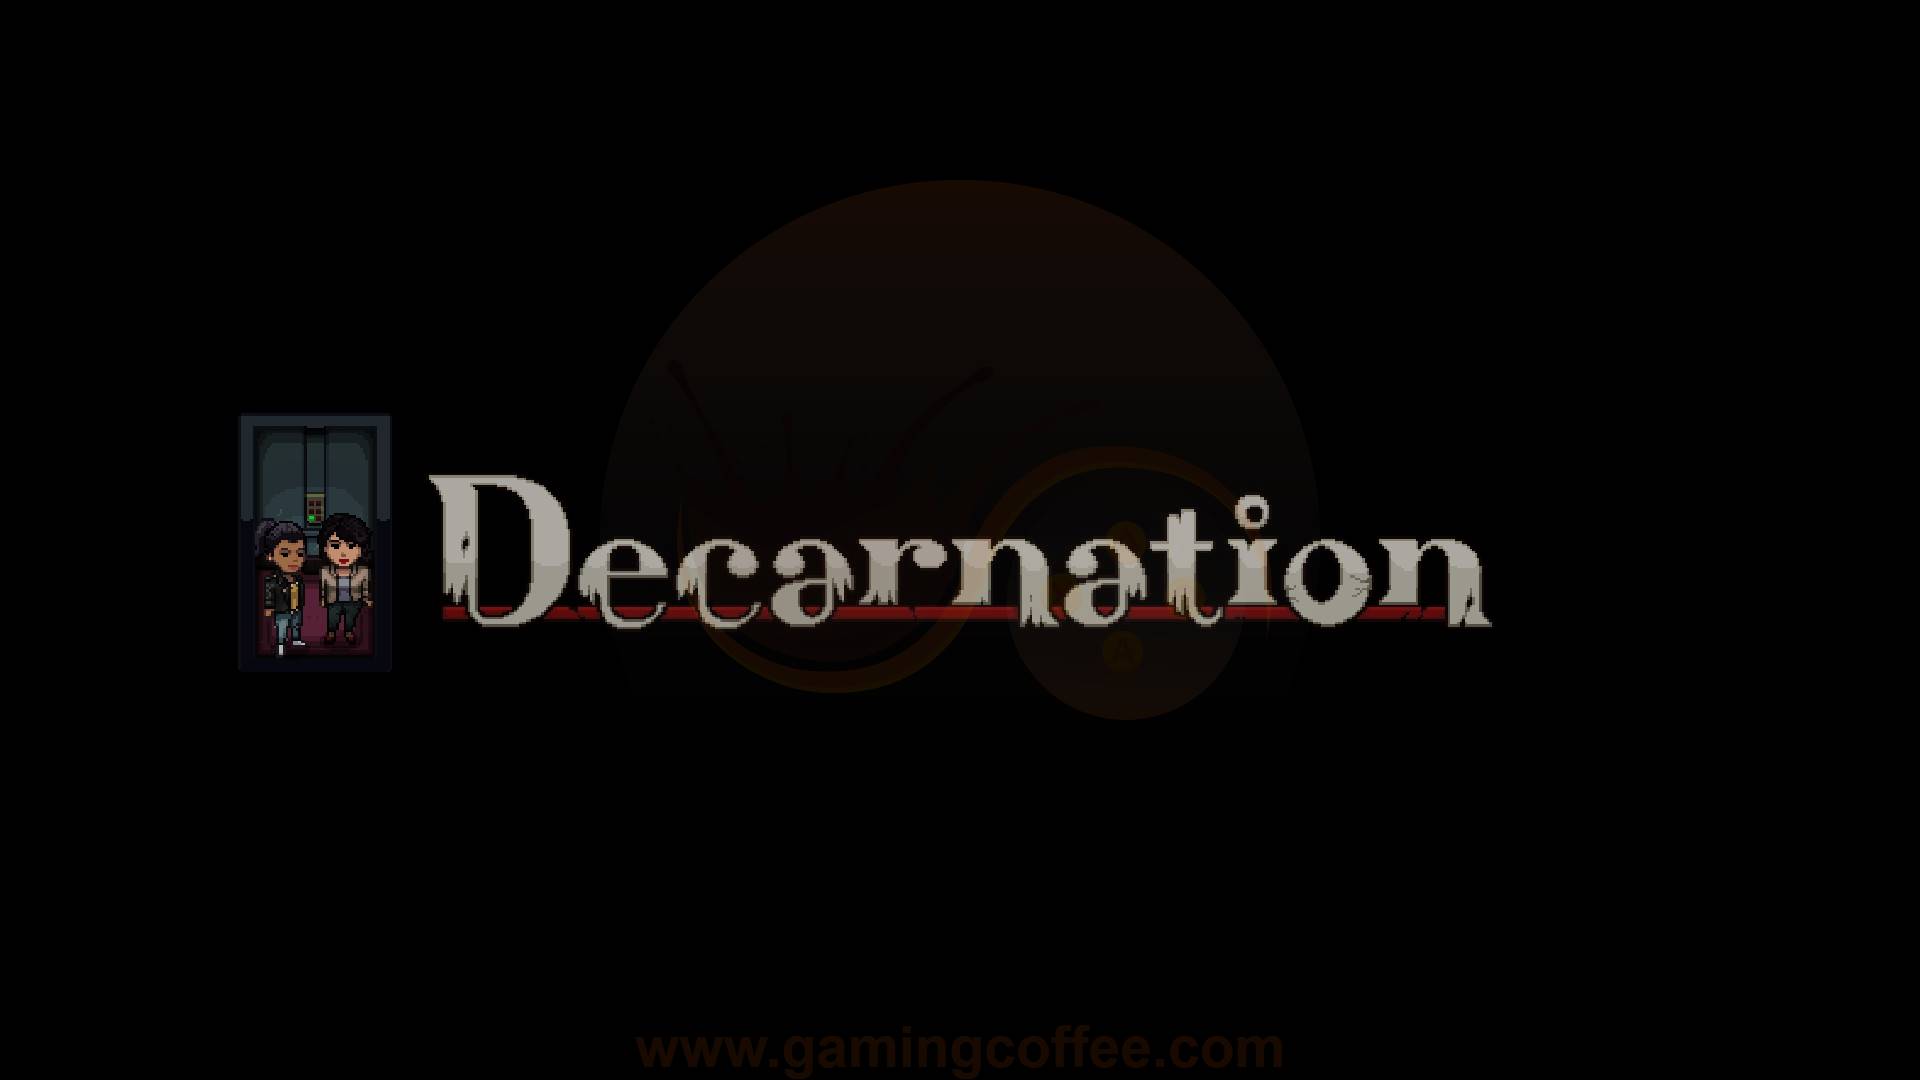 Decarnation a